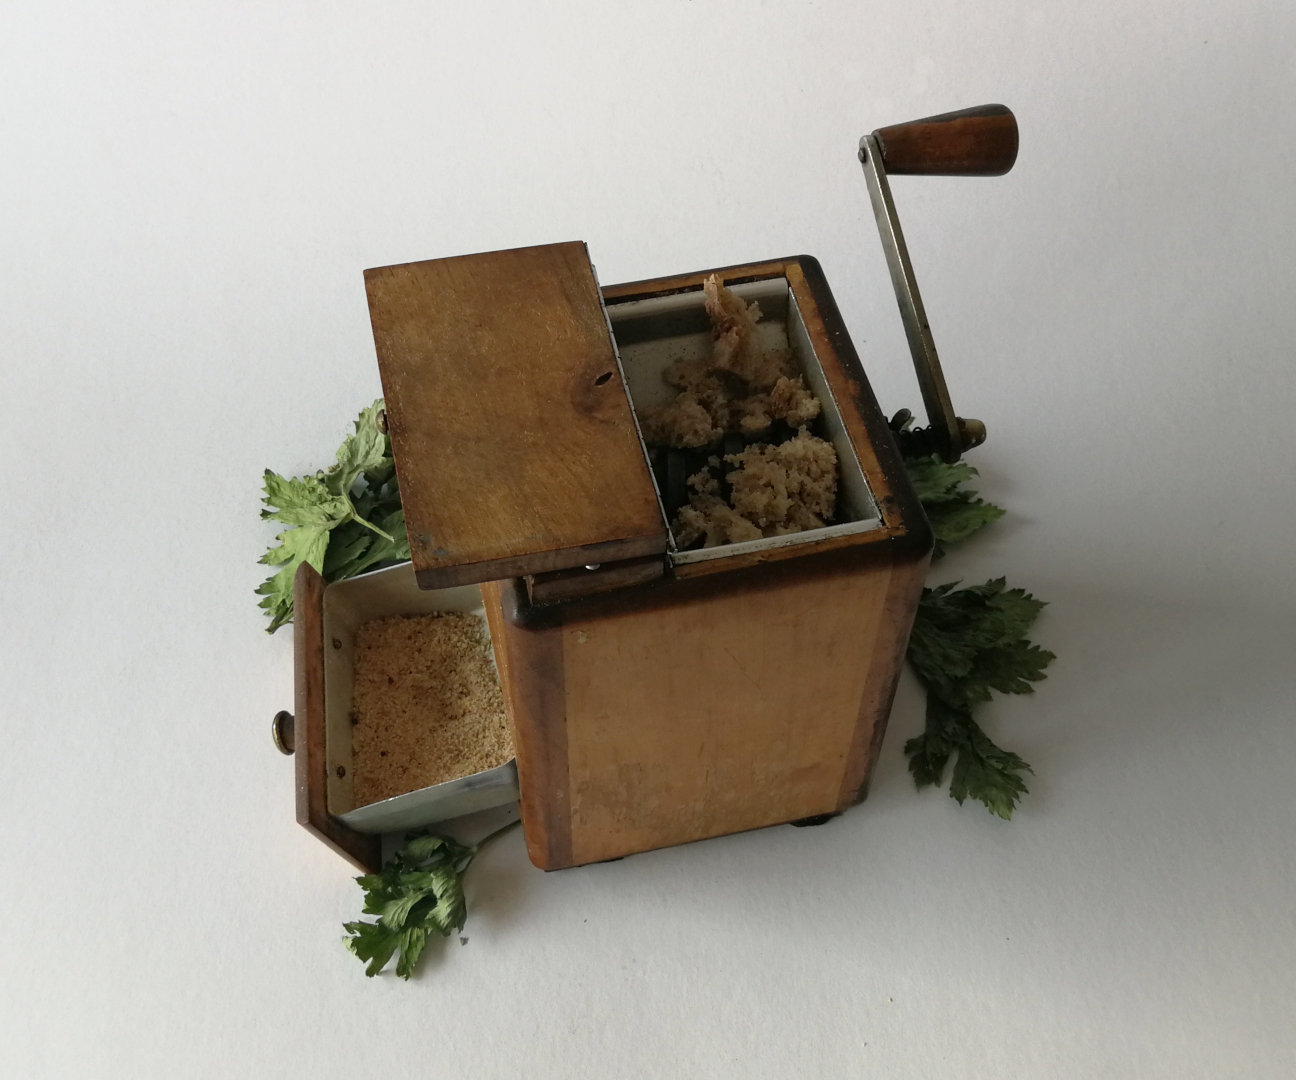 drewnianaręczna maszynka do mielenia z kawałkami pieczywa i gotową bułką tartą w uchylonej szufladzie, w tle suche listki